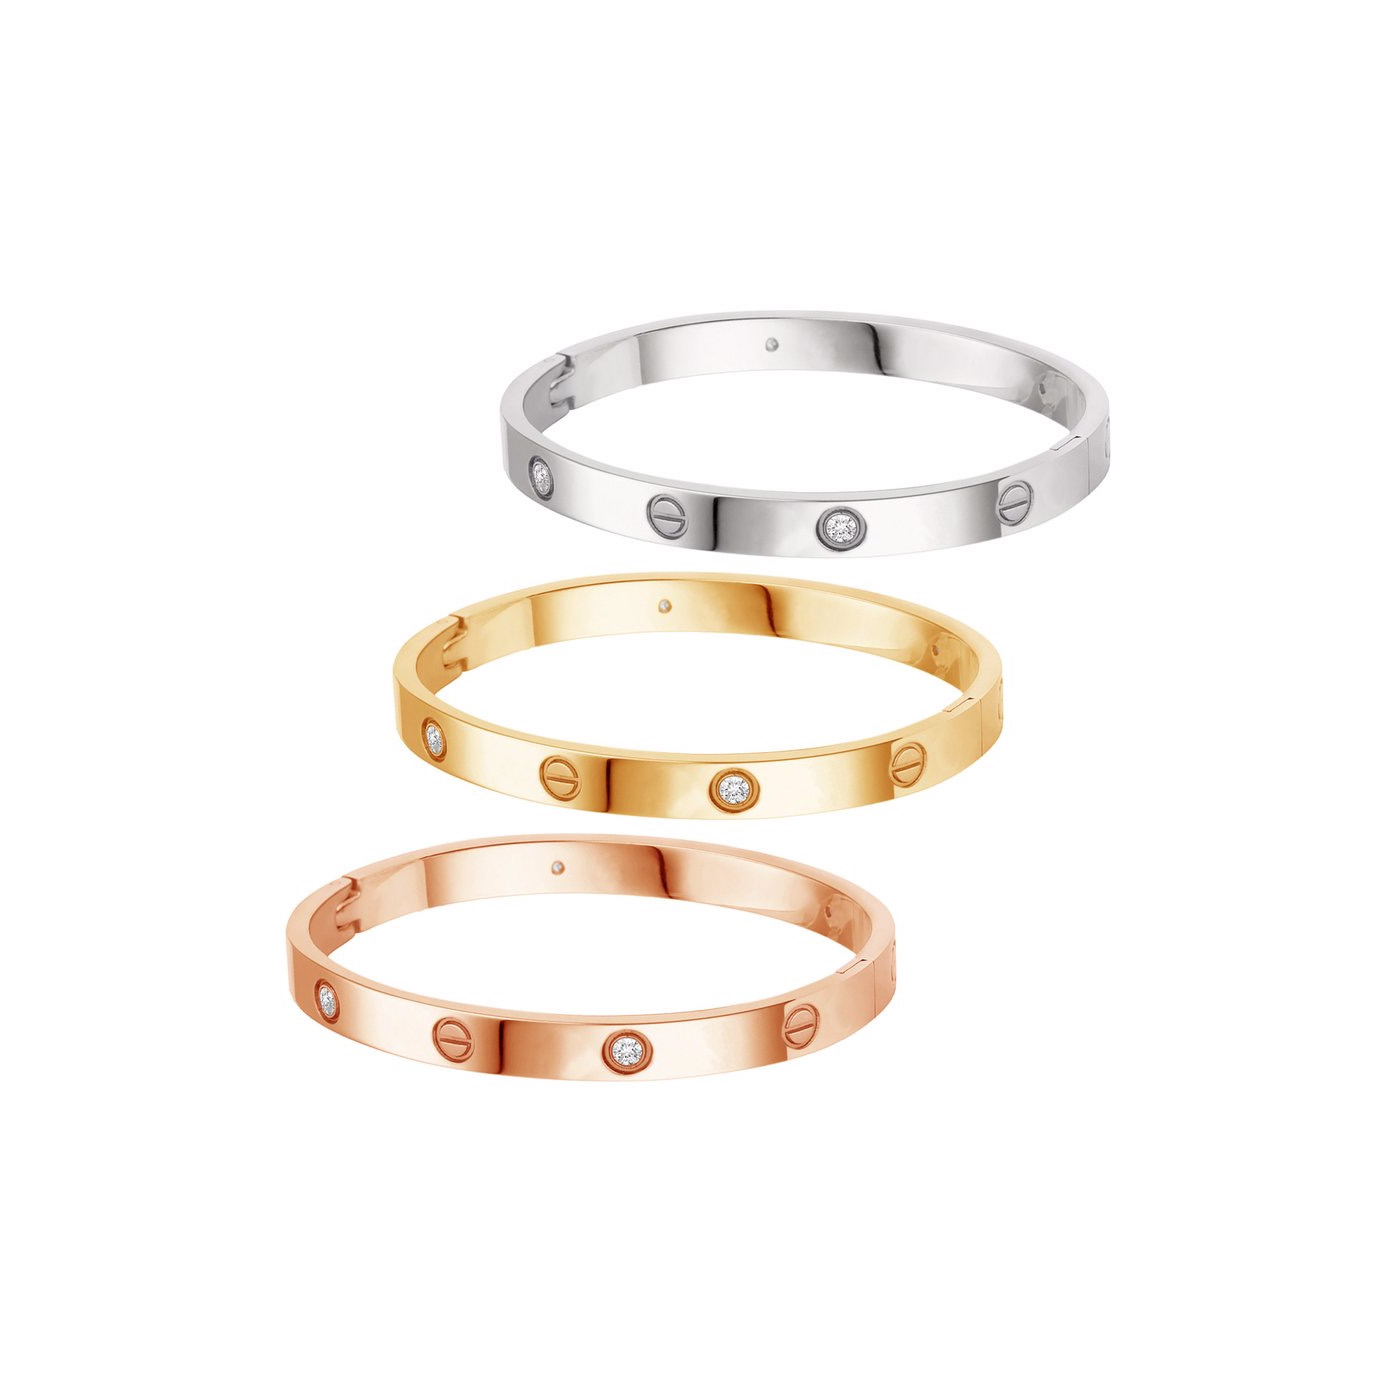 Zestaw srebrnych bransoletek na zamówienie w kolorze białym, różowym i złotym OEM/ODM